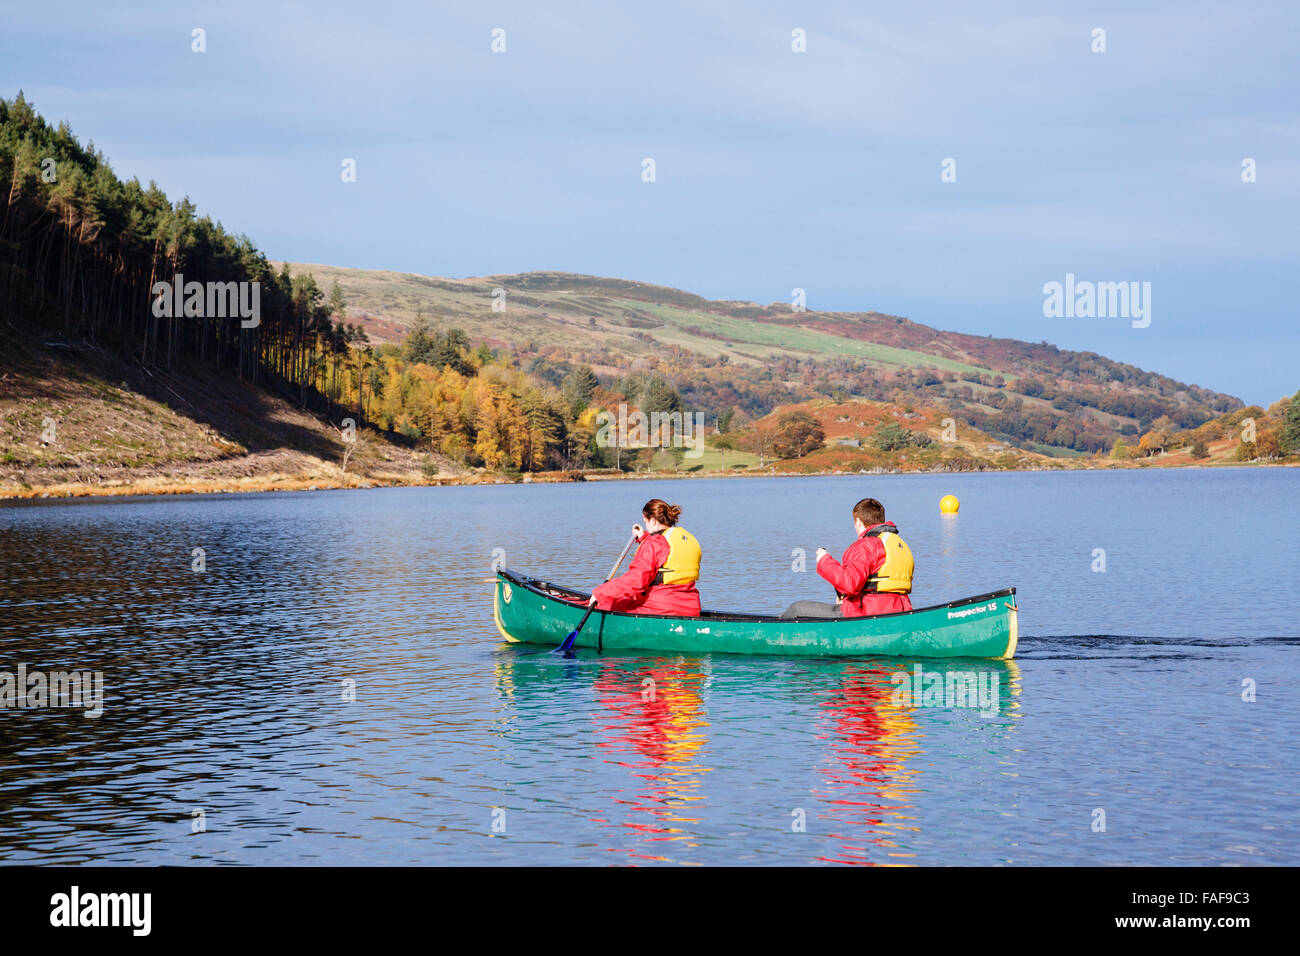 Deux jeunes gens portant des gilets de pagayer en canoë sur un Geirionydd Llyn lake sur une journée ensoleillée à l'automne dans le parc national de Snowdonia. Pays de Galles UK Banque D'Images